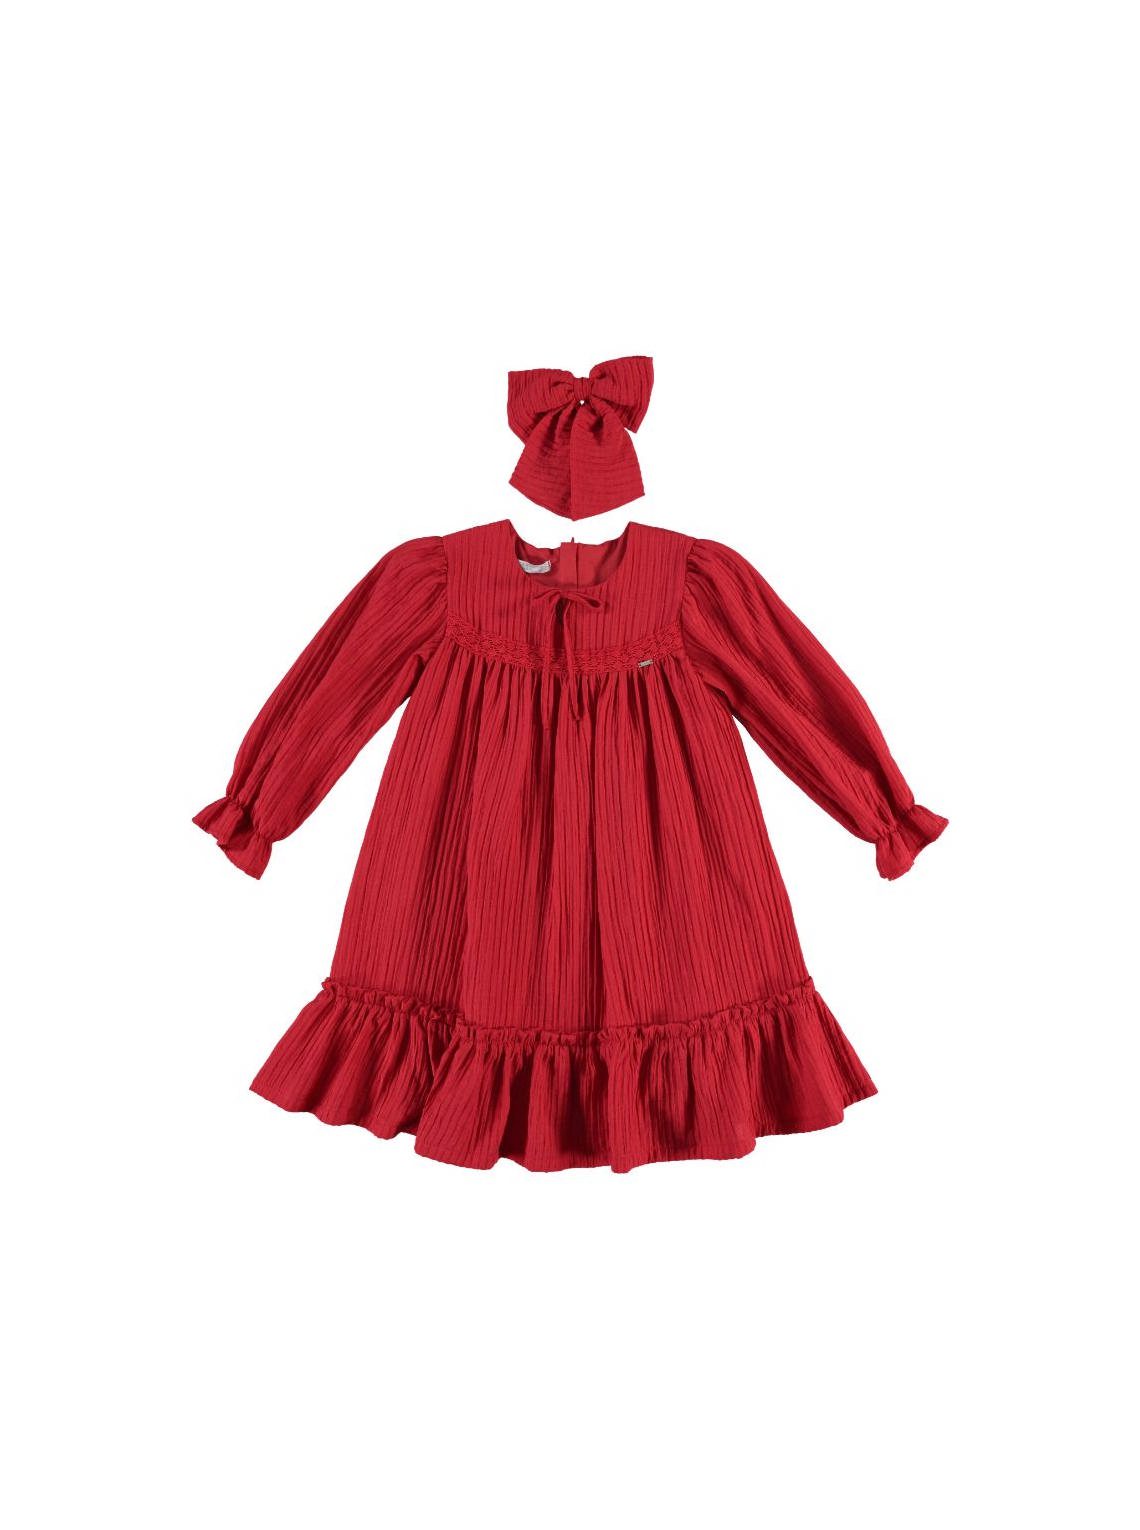 Exclusive Brand - Girl 2 Pieces Frilly Dress Set ( Dress + Bandana ) / 6-7Y | 7-8Y | 8-9Y | 9-10Y - Kids Fashion Turkey